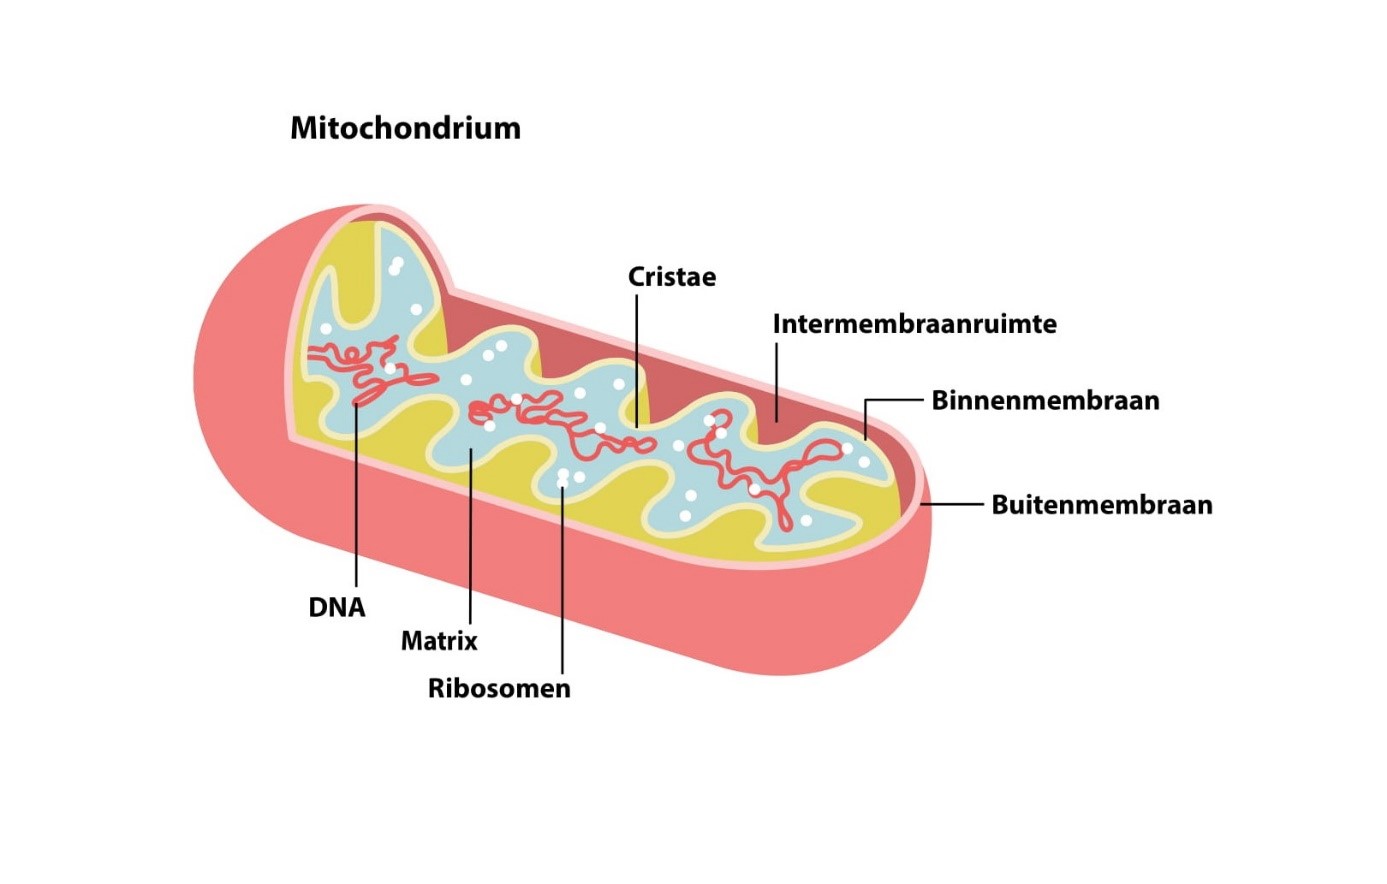 Mitochondria mE/CVS